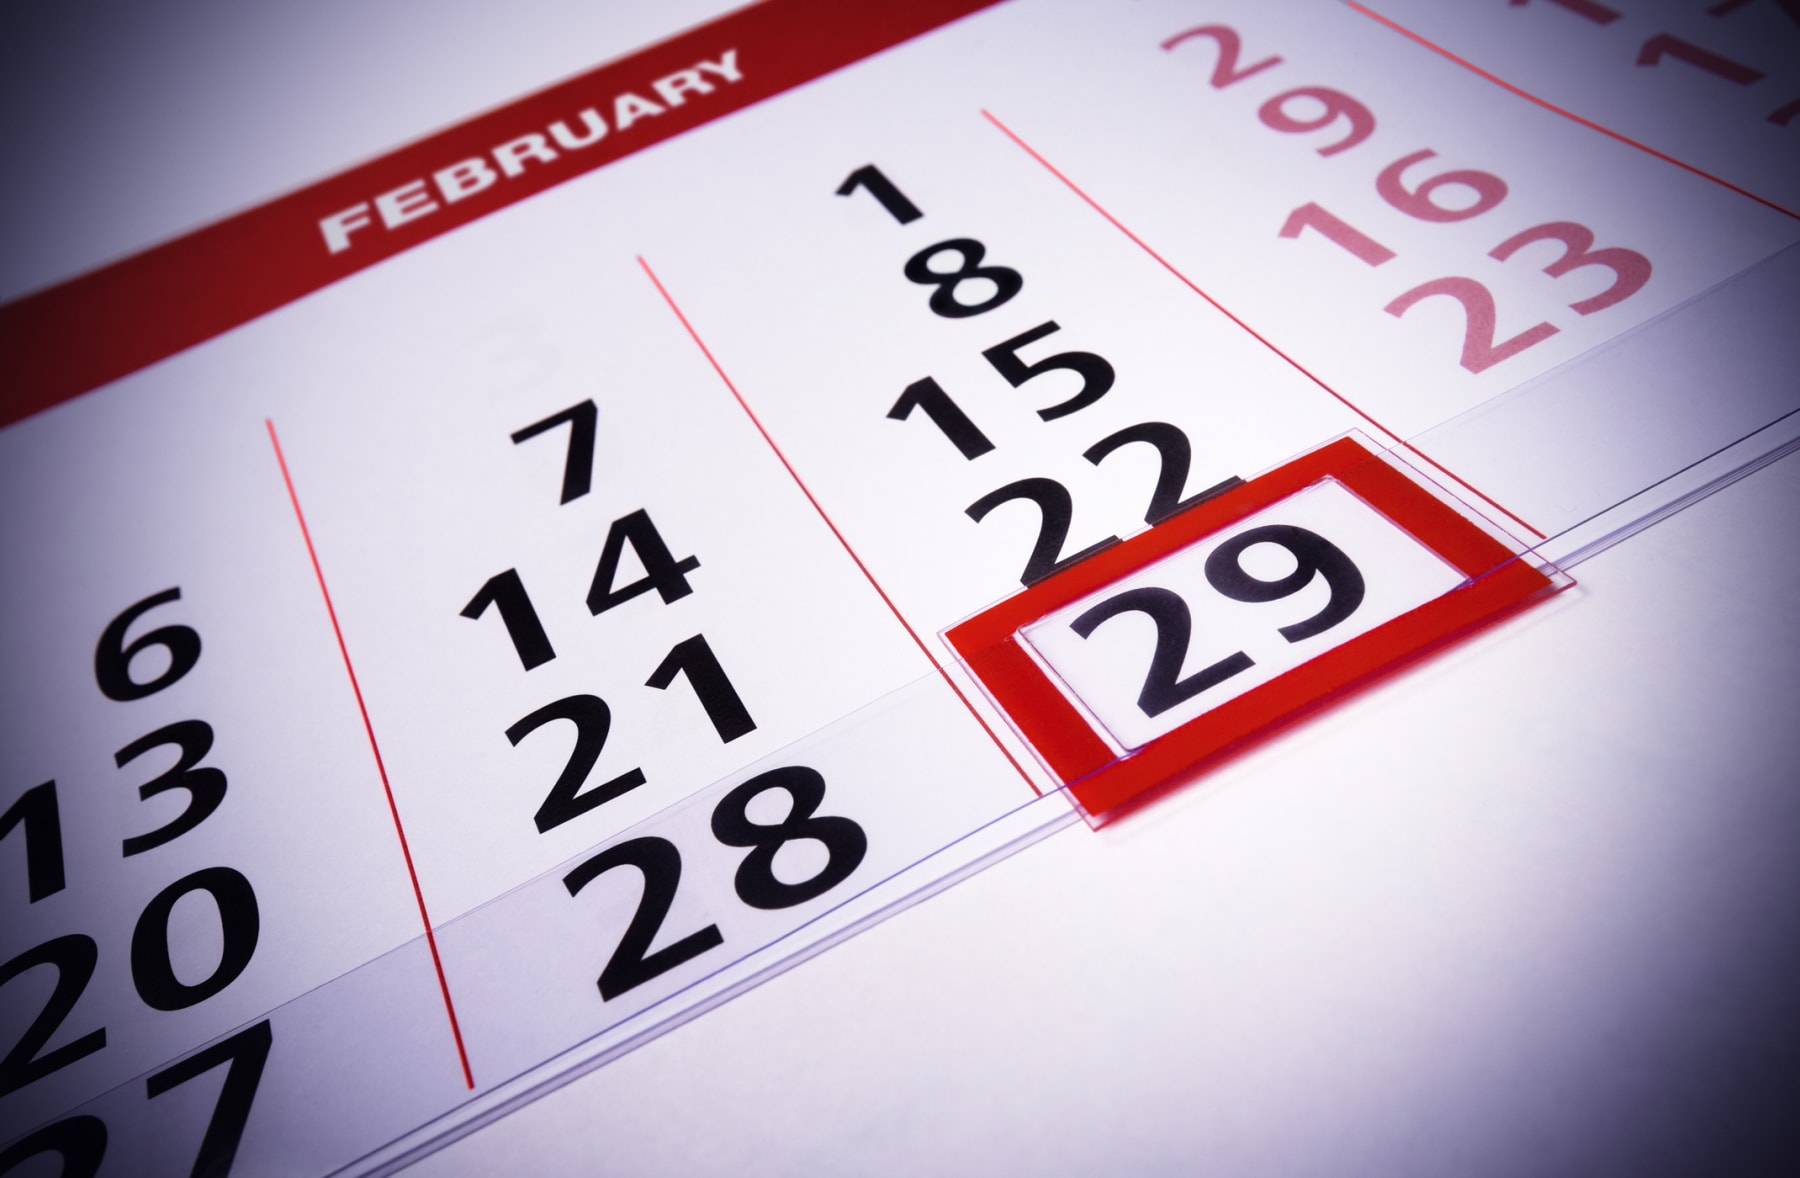 February 29 on calendar